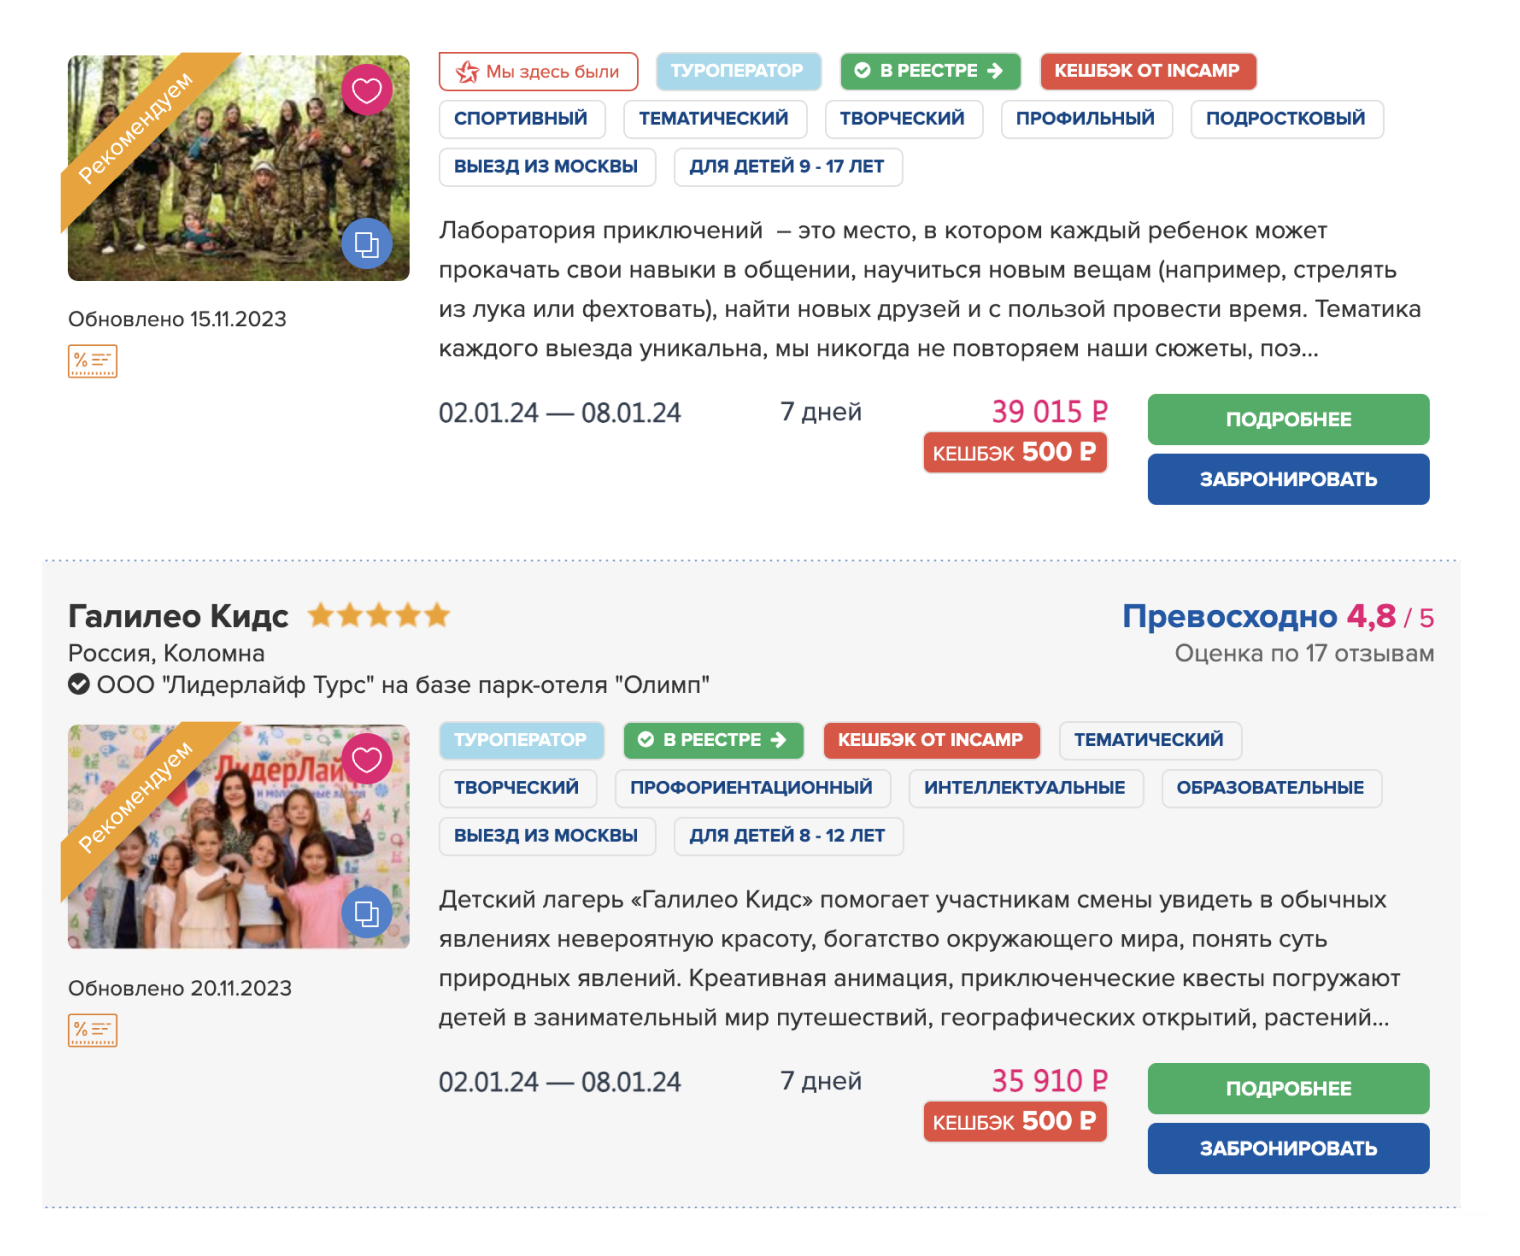 Лагерей от частных компаний очень много, вот некоторые, работающие в Подмосковье. Источник: incamp.ru